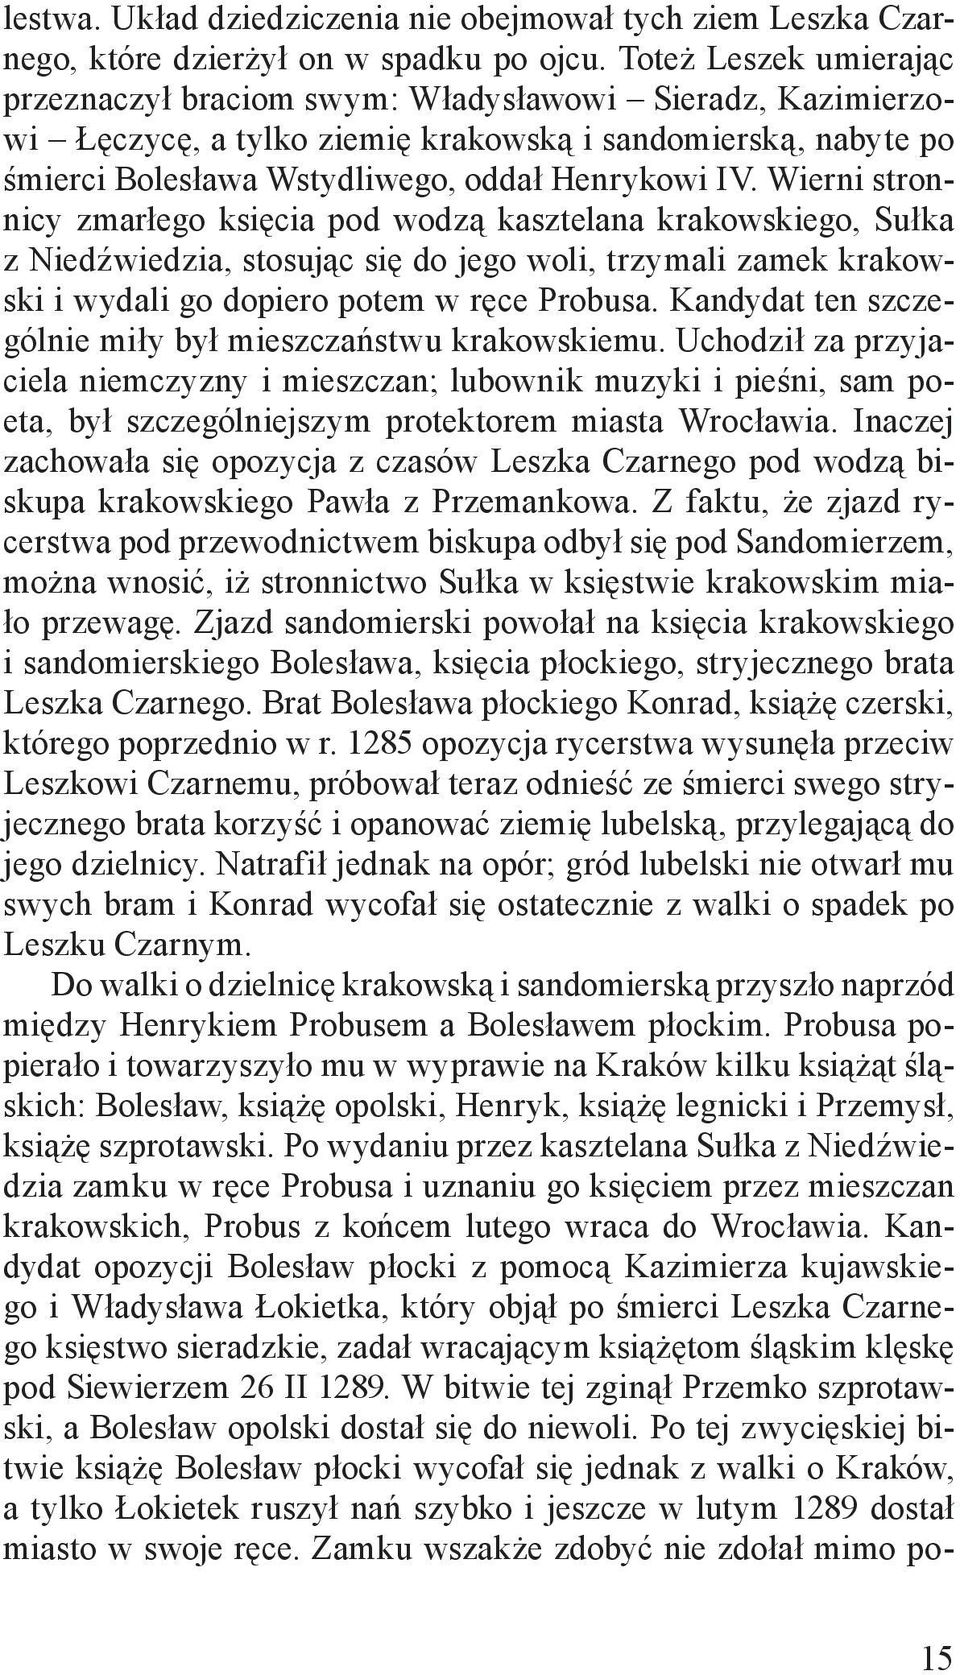 Wierni stronnicy zmarłego księcia pod wodzą kasztelana krakowskiego, Sułka z Niedźwiedzia, stosując się do jego woli, trzymali zamek krakowski i wydali go dopiero potem w ręce Probusa.